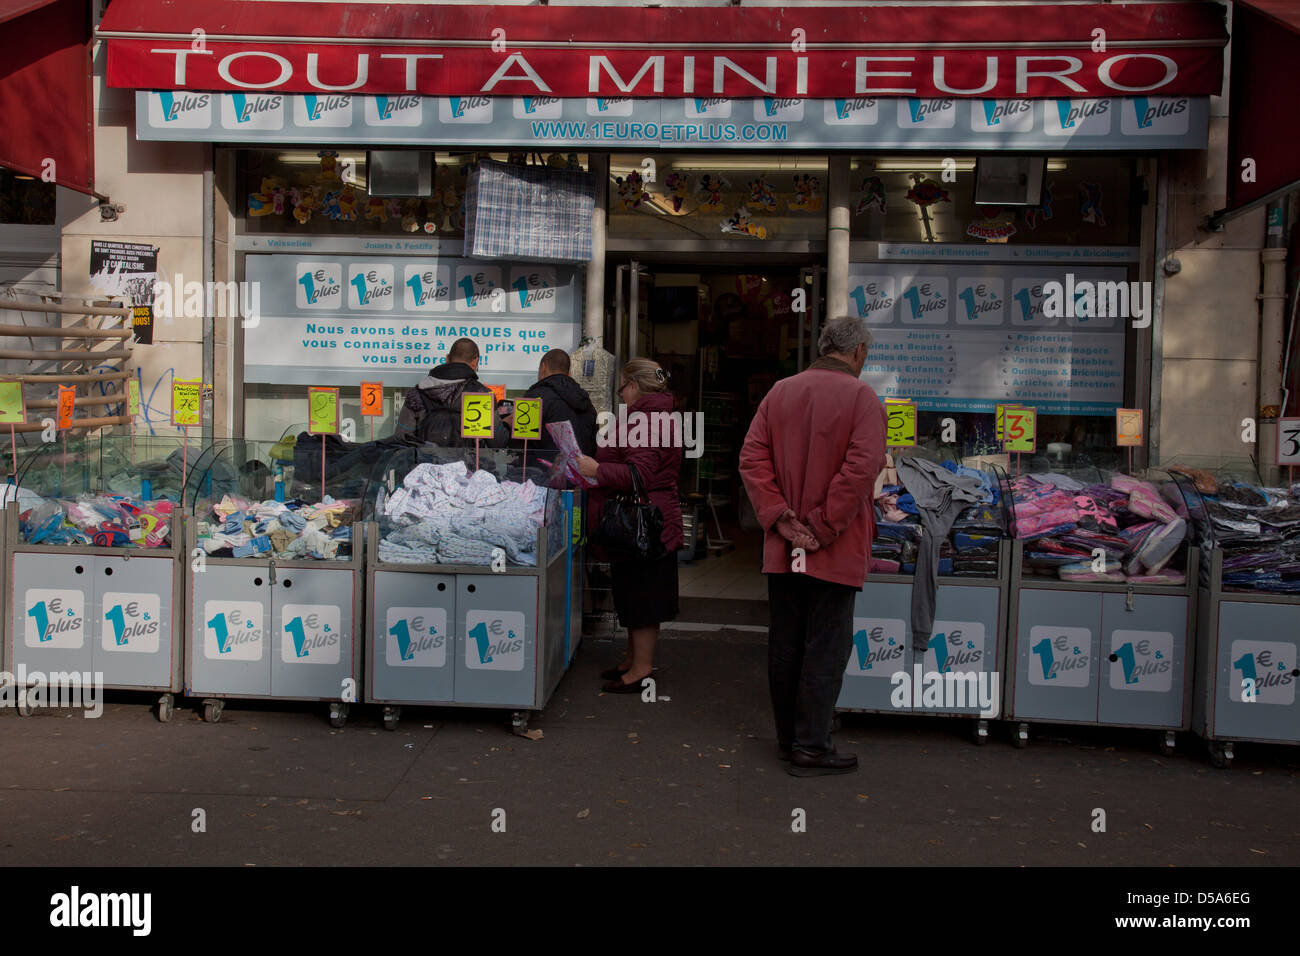 Bargain 1 Euro shop in Belleville, Paris, France Stock Photo - Alamy